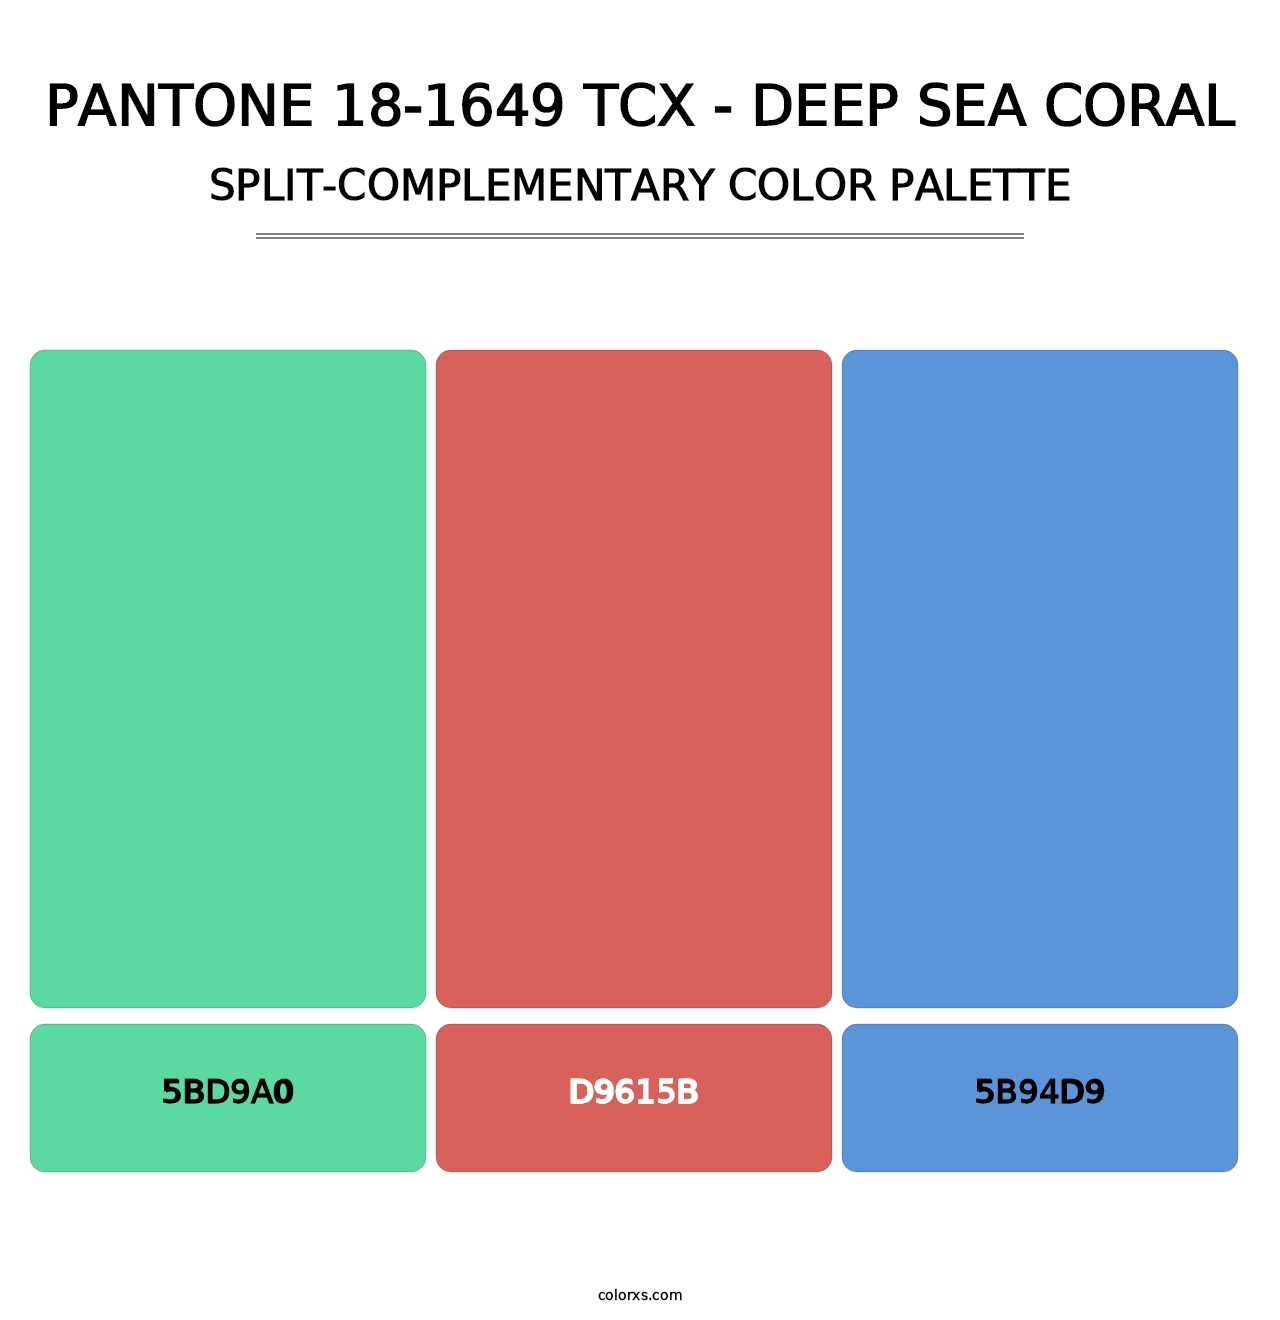 PANTONE 18-1649 TCX - Deep Sea Coral - Split-Complementary Color Palette